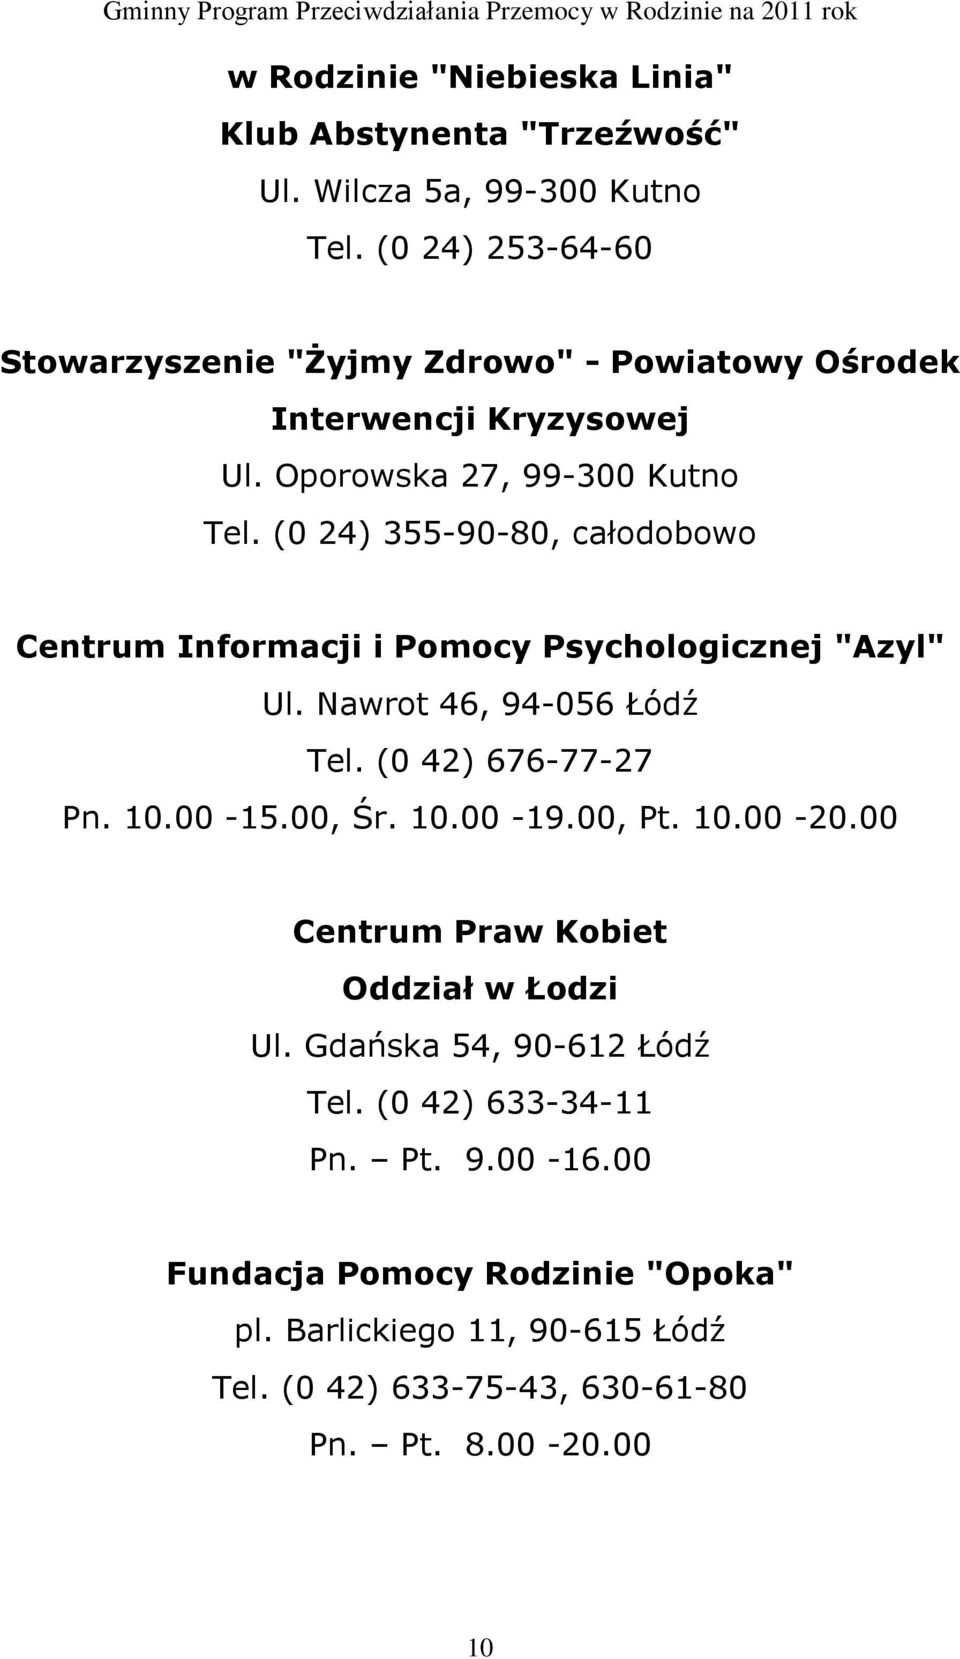 (0 24) 355-90-80, całodobowo Centrum Informacji i Pomocy Psychologicznej "Azyl" Ul. Nawrot 46, 94-056 Łódź Tel. (0 42) 676-77-27 Pn. 10.00-15.00, Śr. 10.00-19.